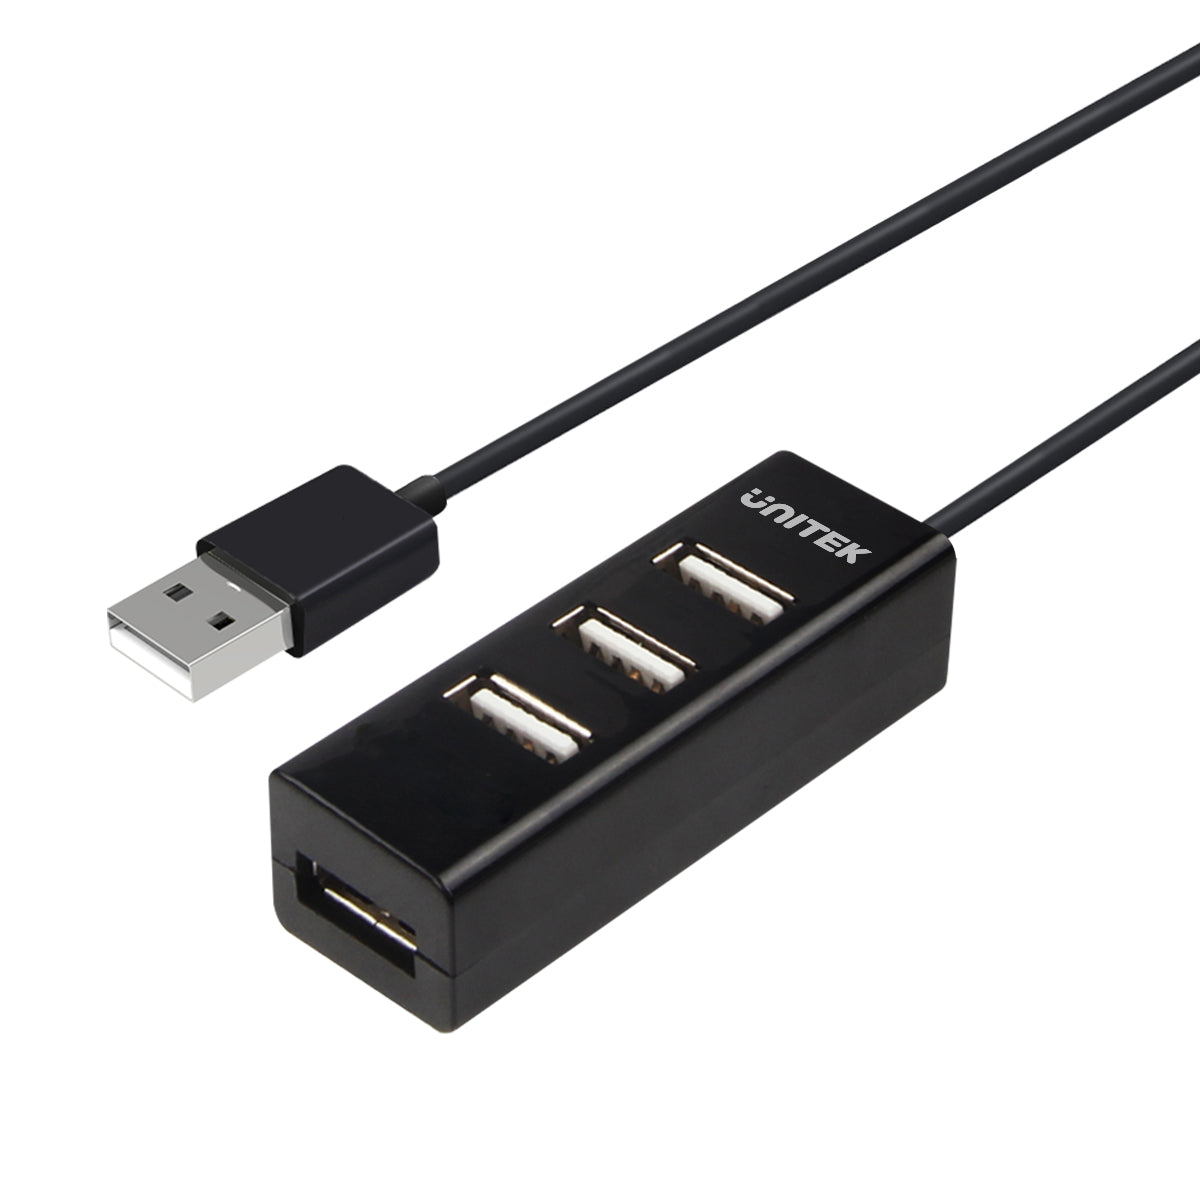 forbruge Hviske At sige sandheden 4 Ports USB 2.0 Hub (80cm Cable)